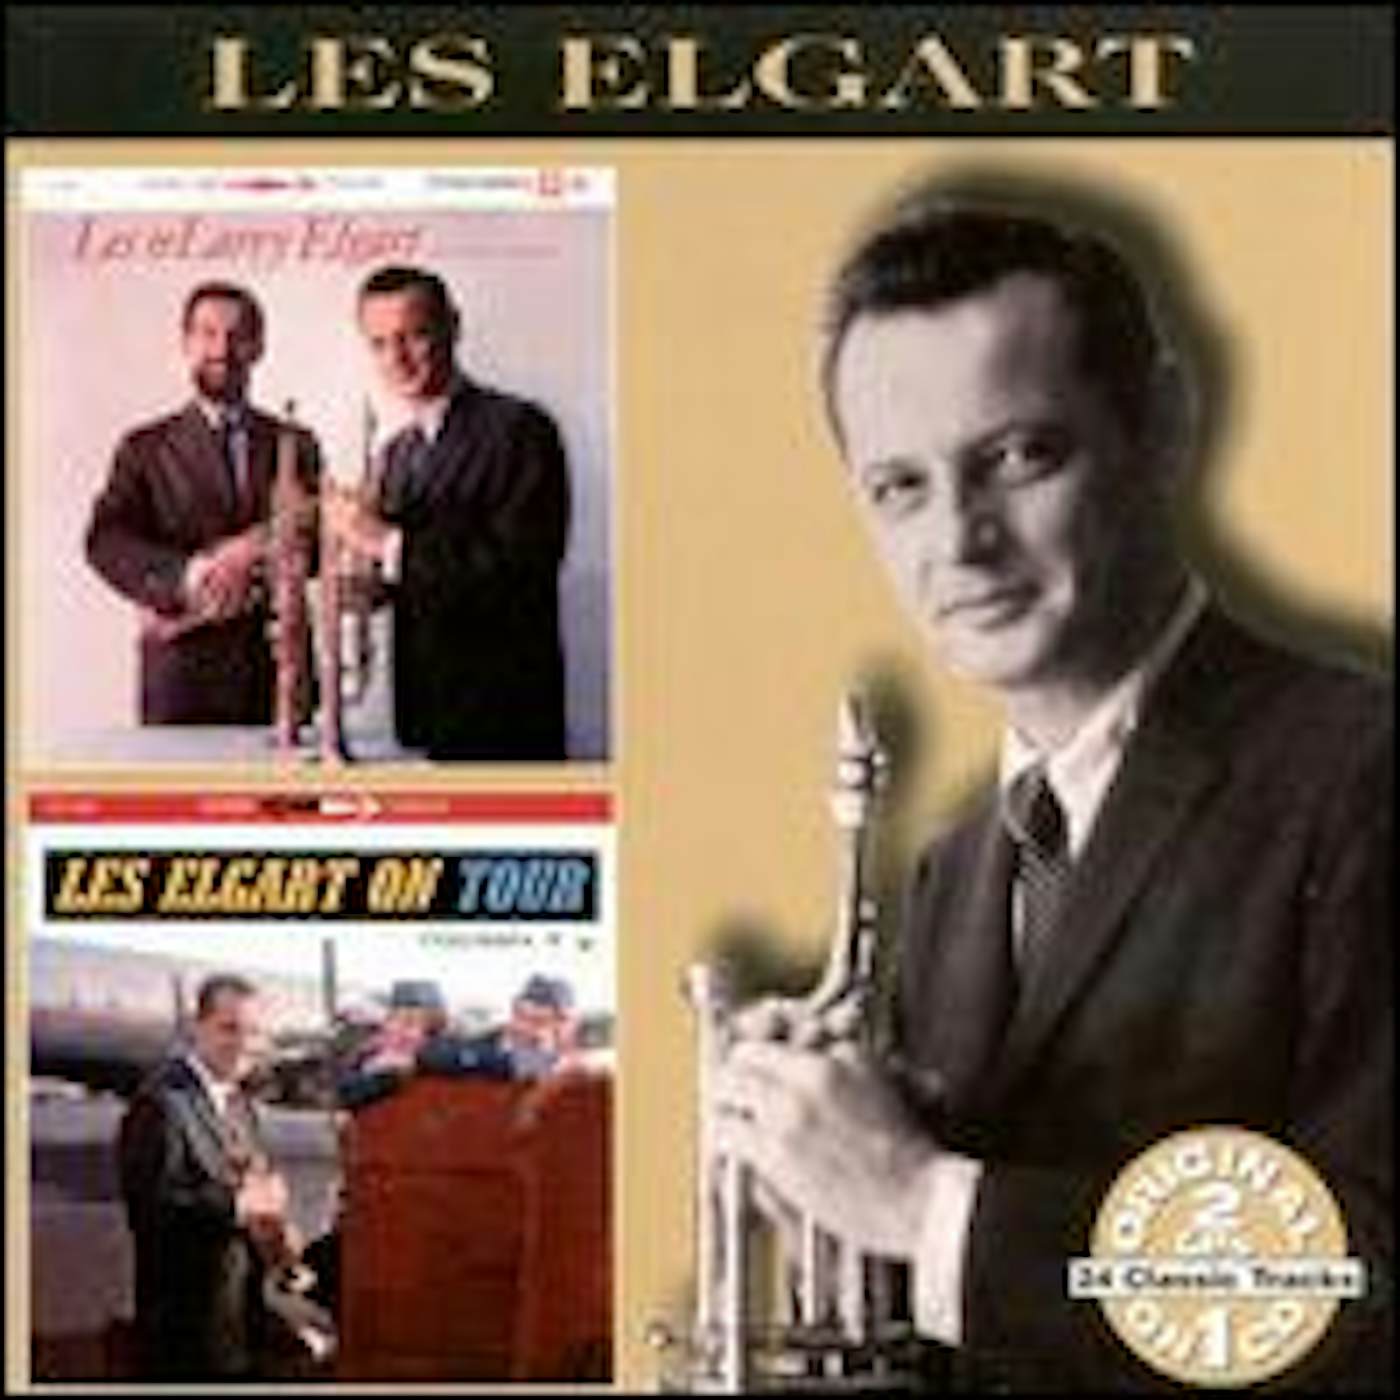 LES & LARRY ELGART / LES ELGART ON TOUR CD